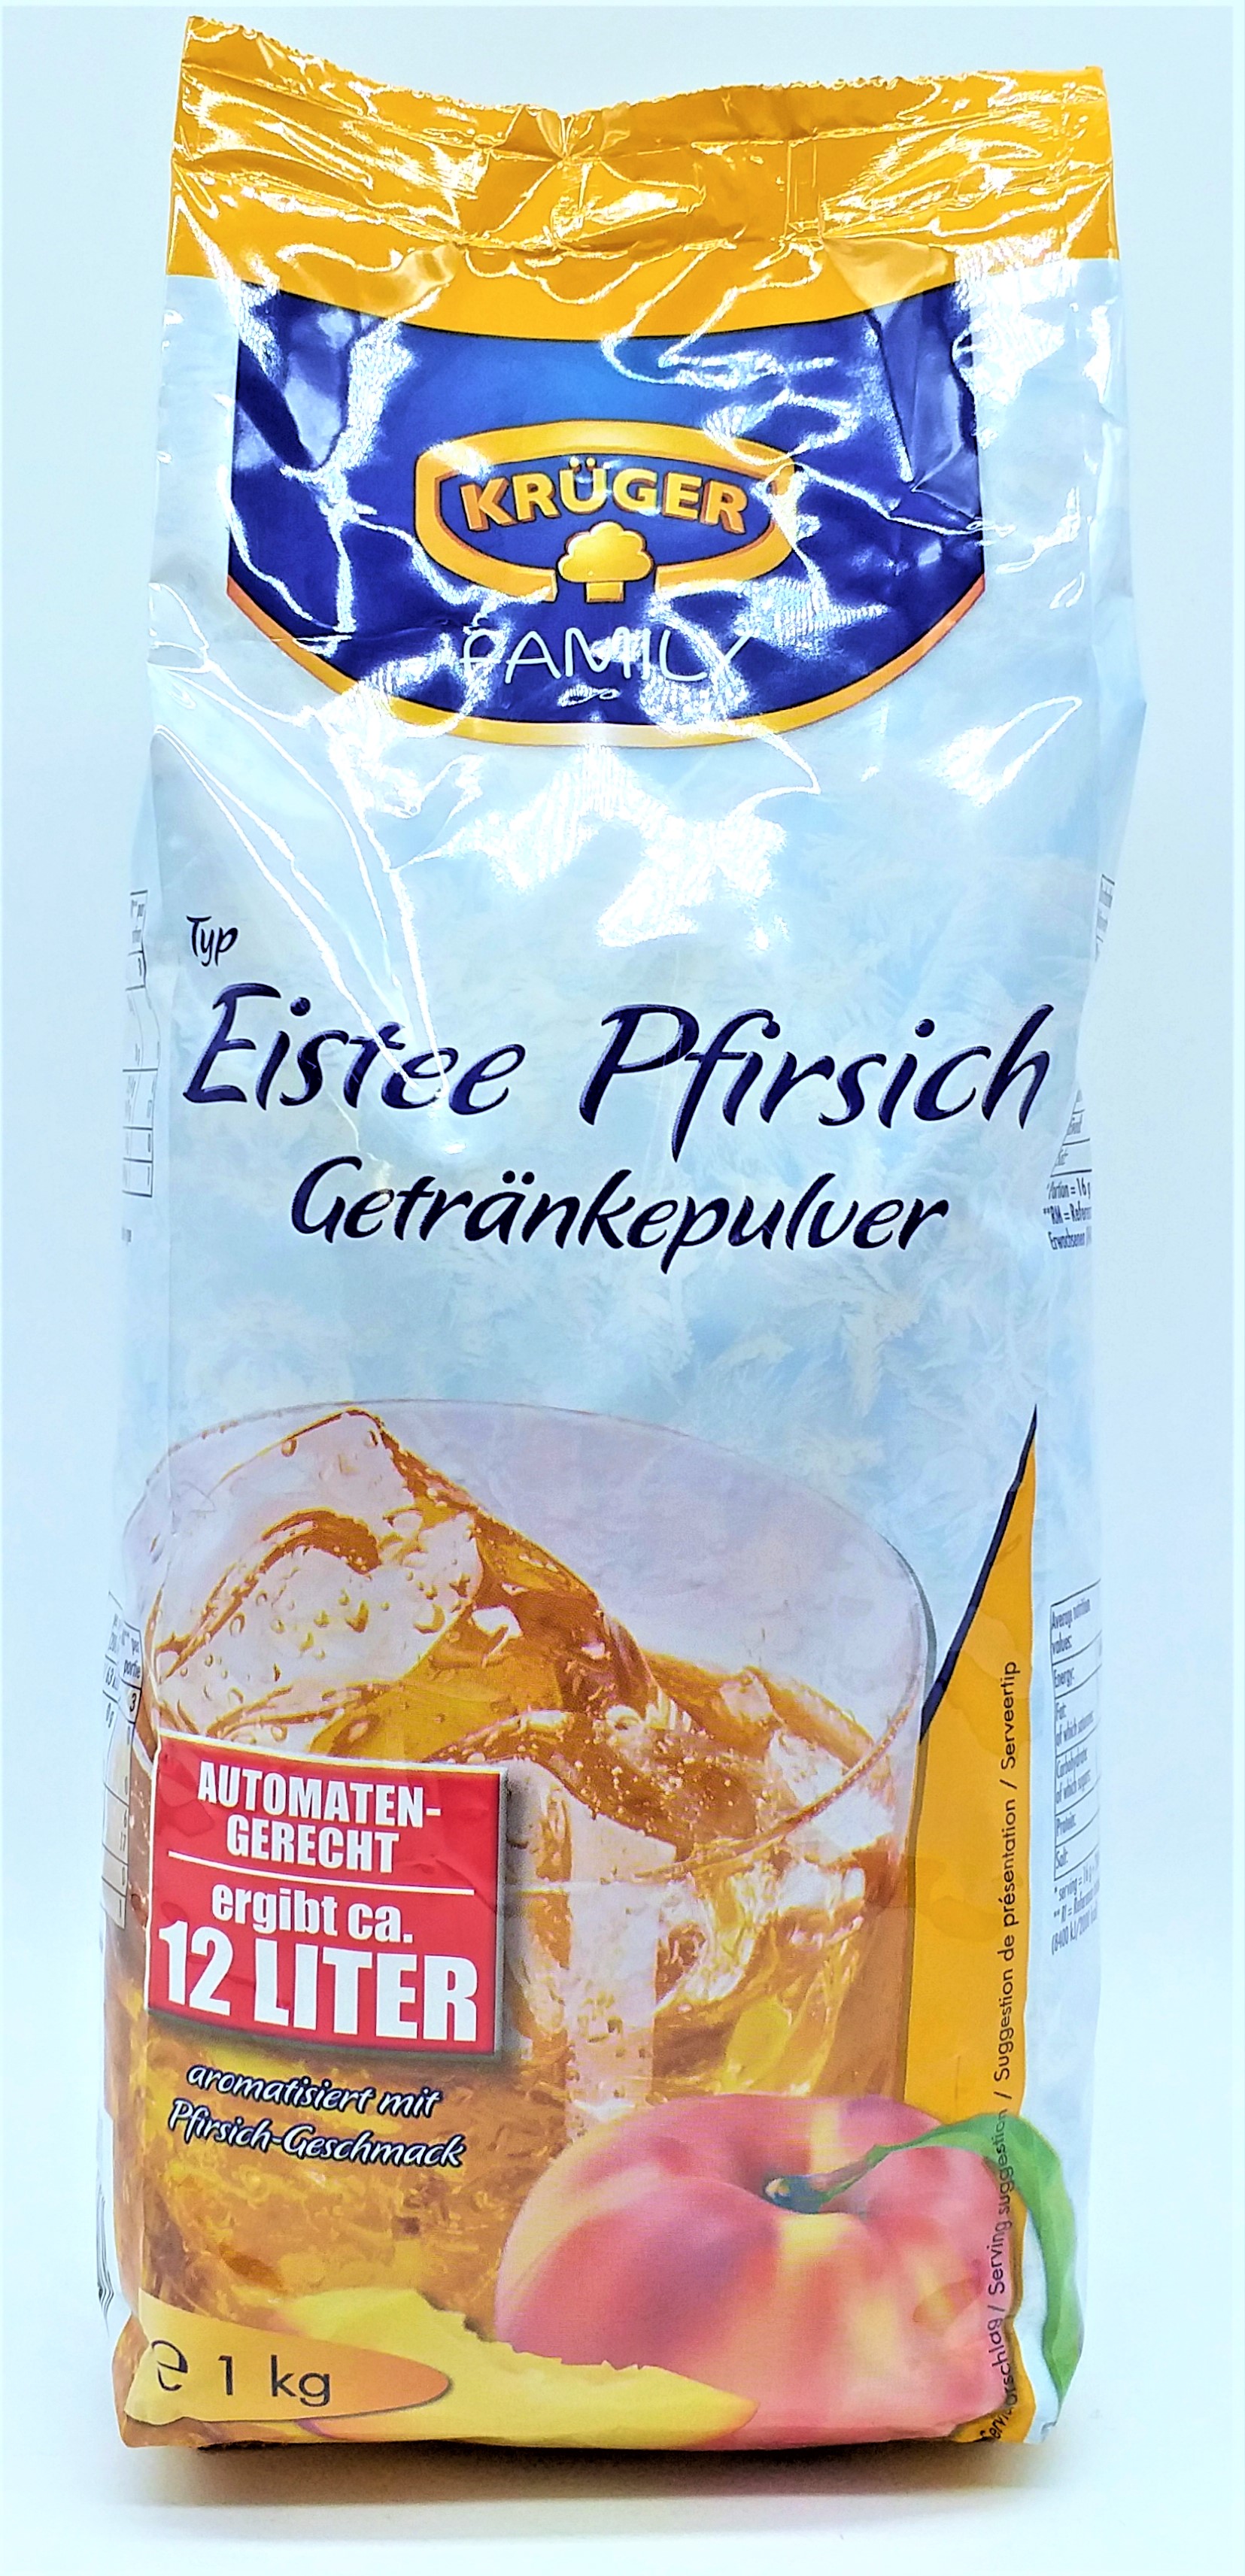 Krüger Eistee Pfirsich 1kg